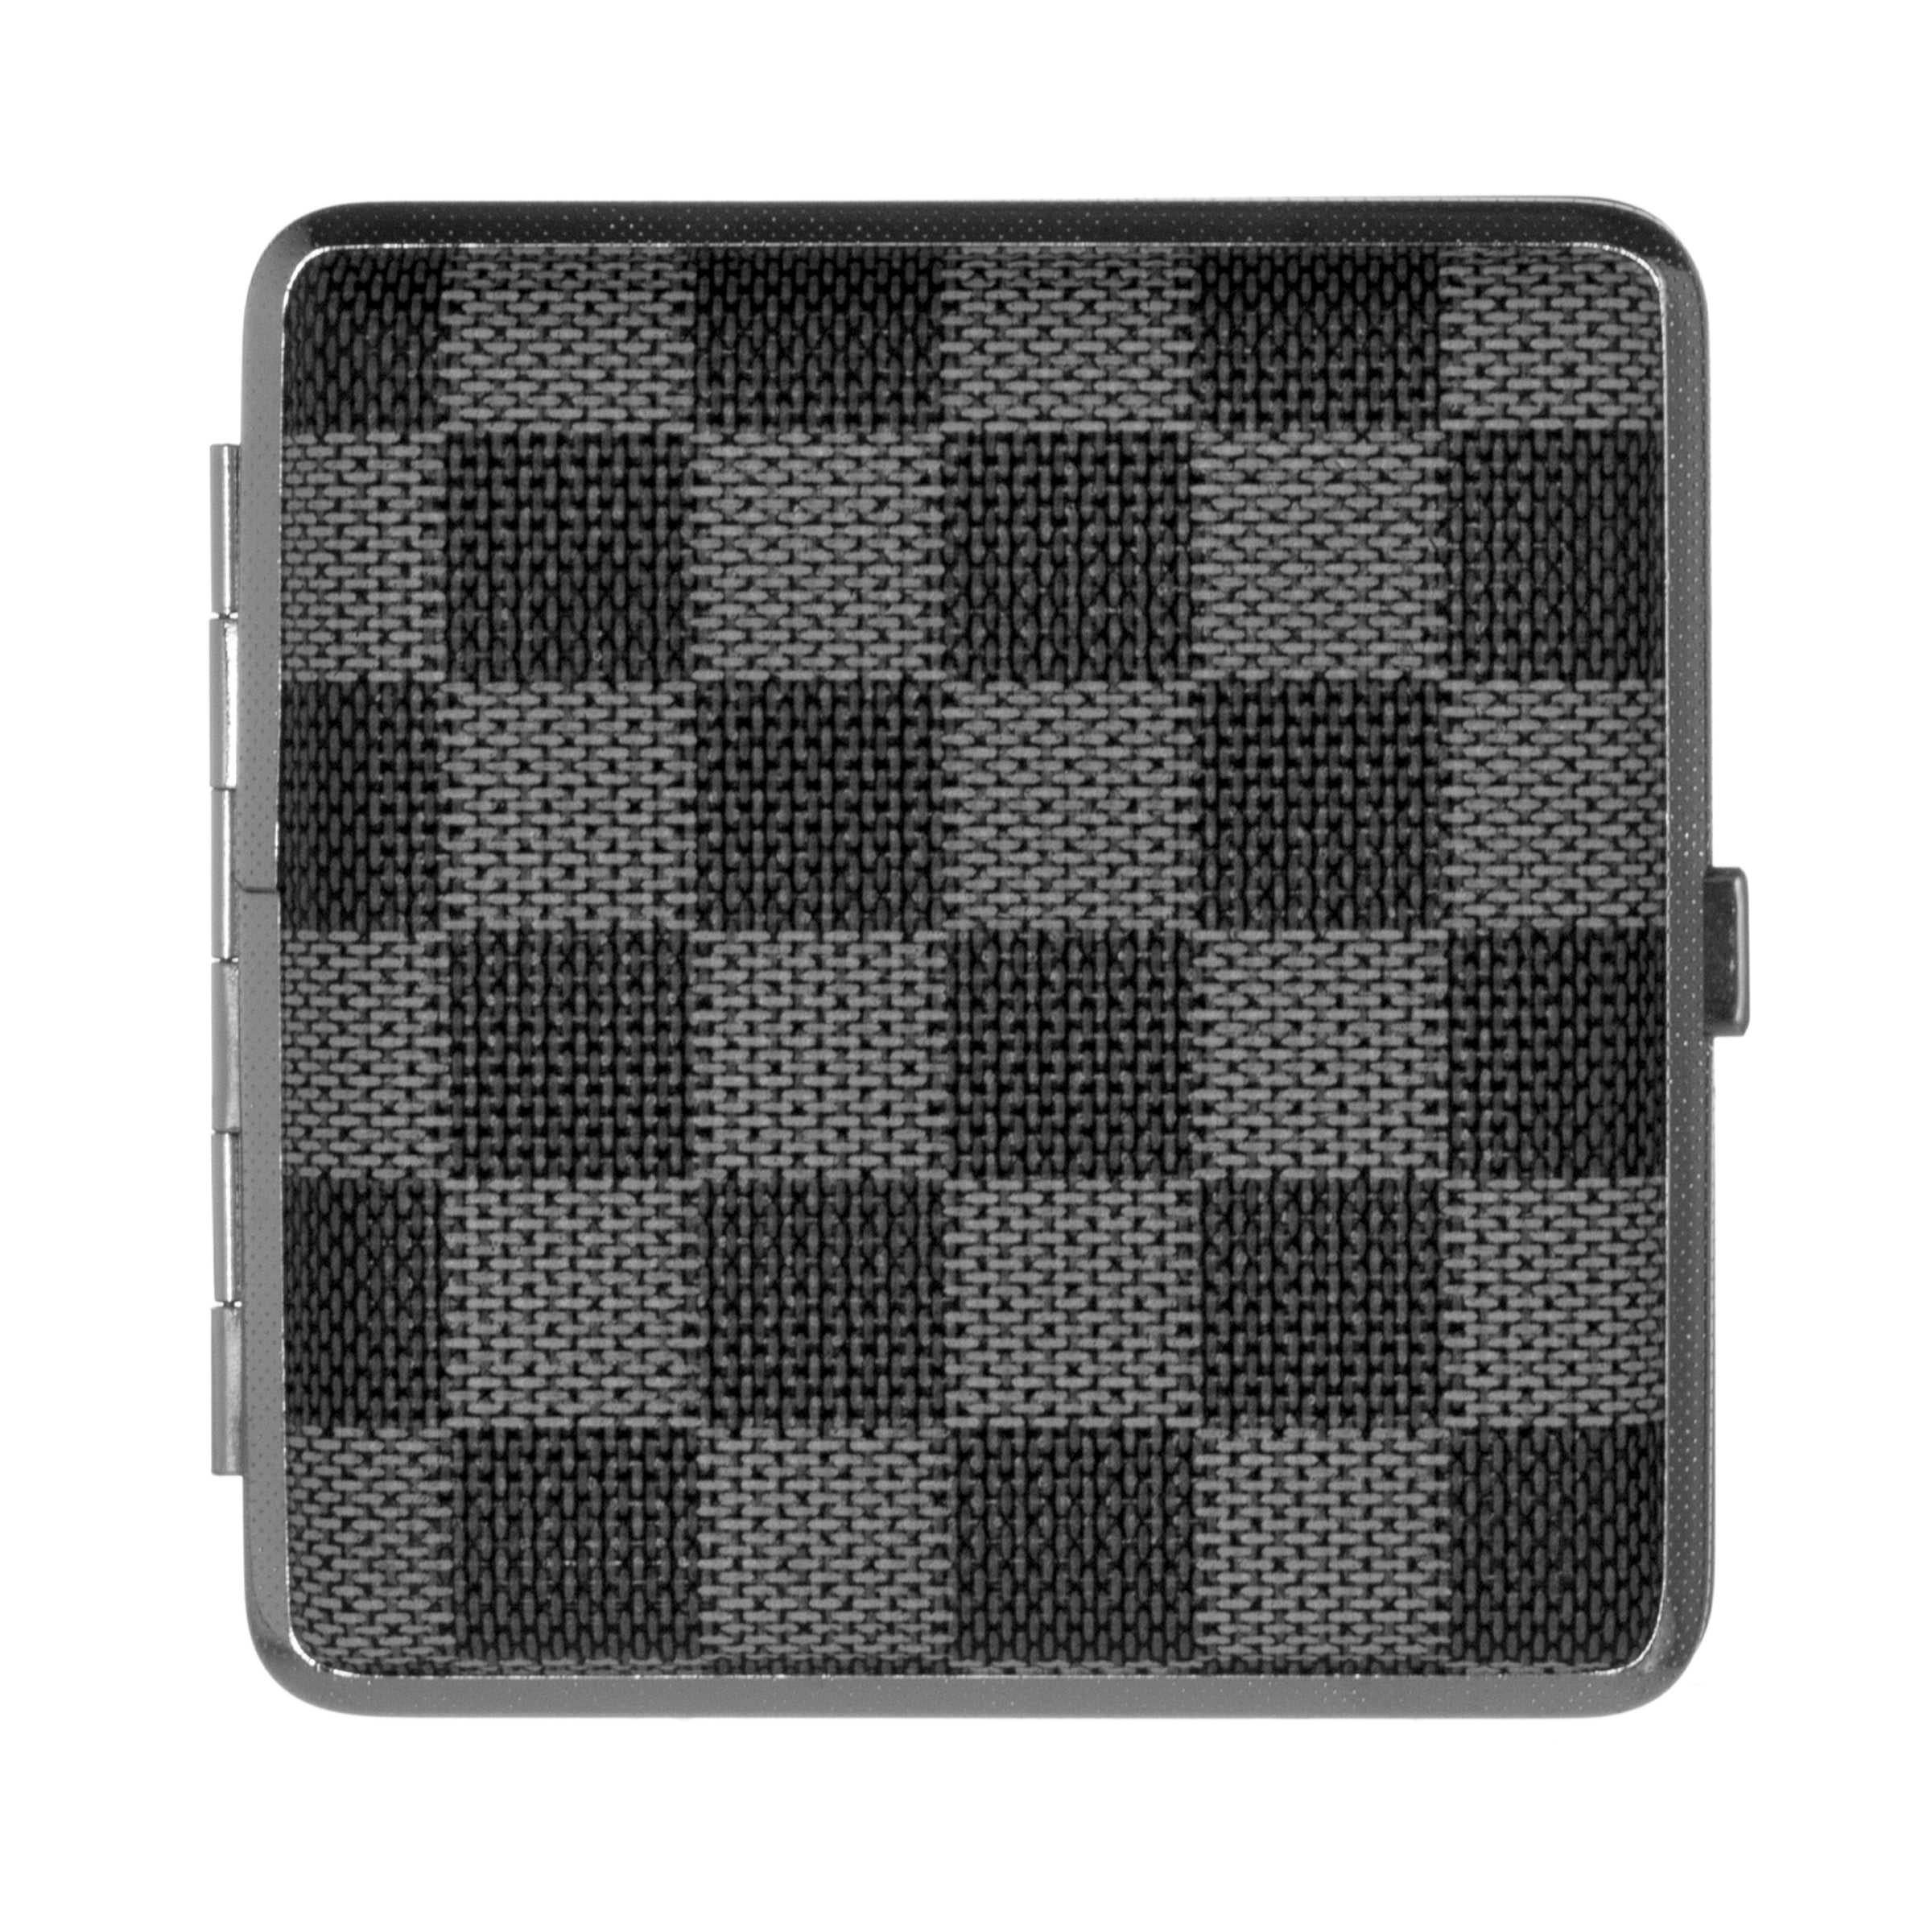 Checkered Design 20 Cigarette Case